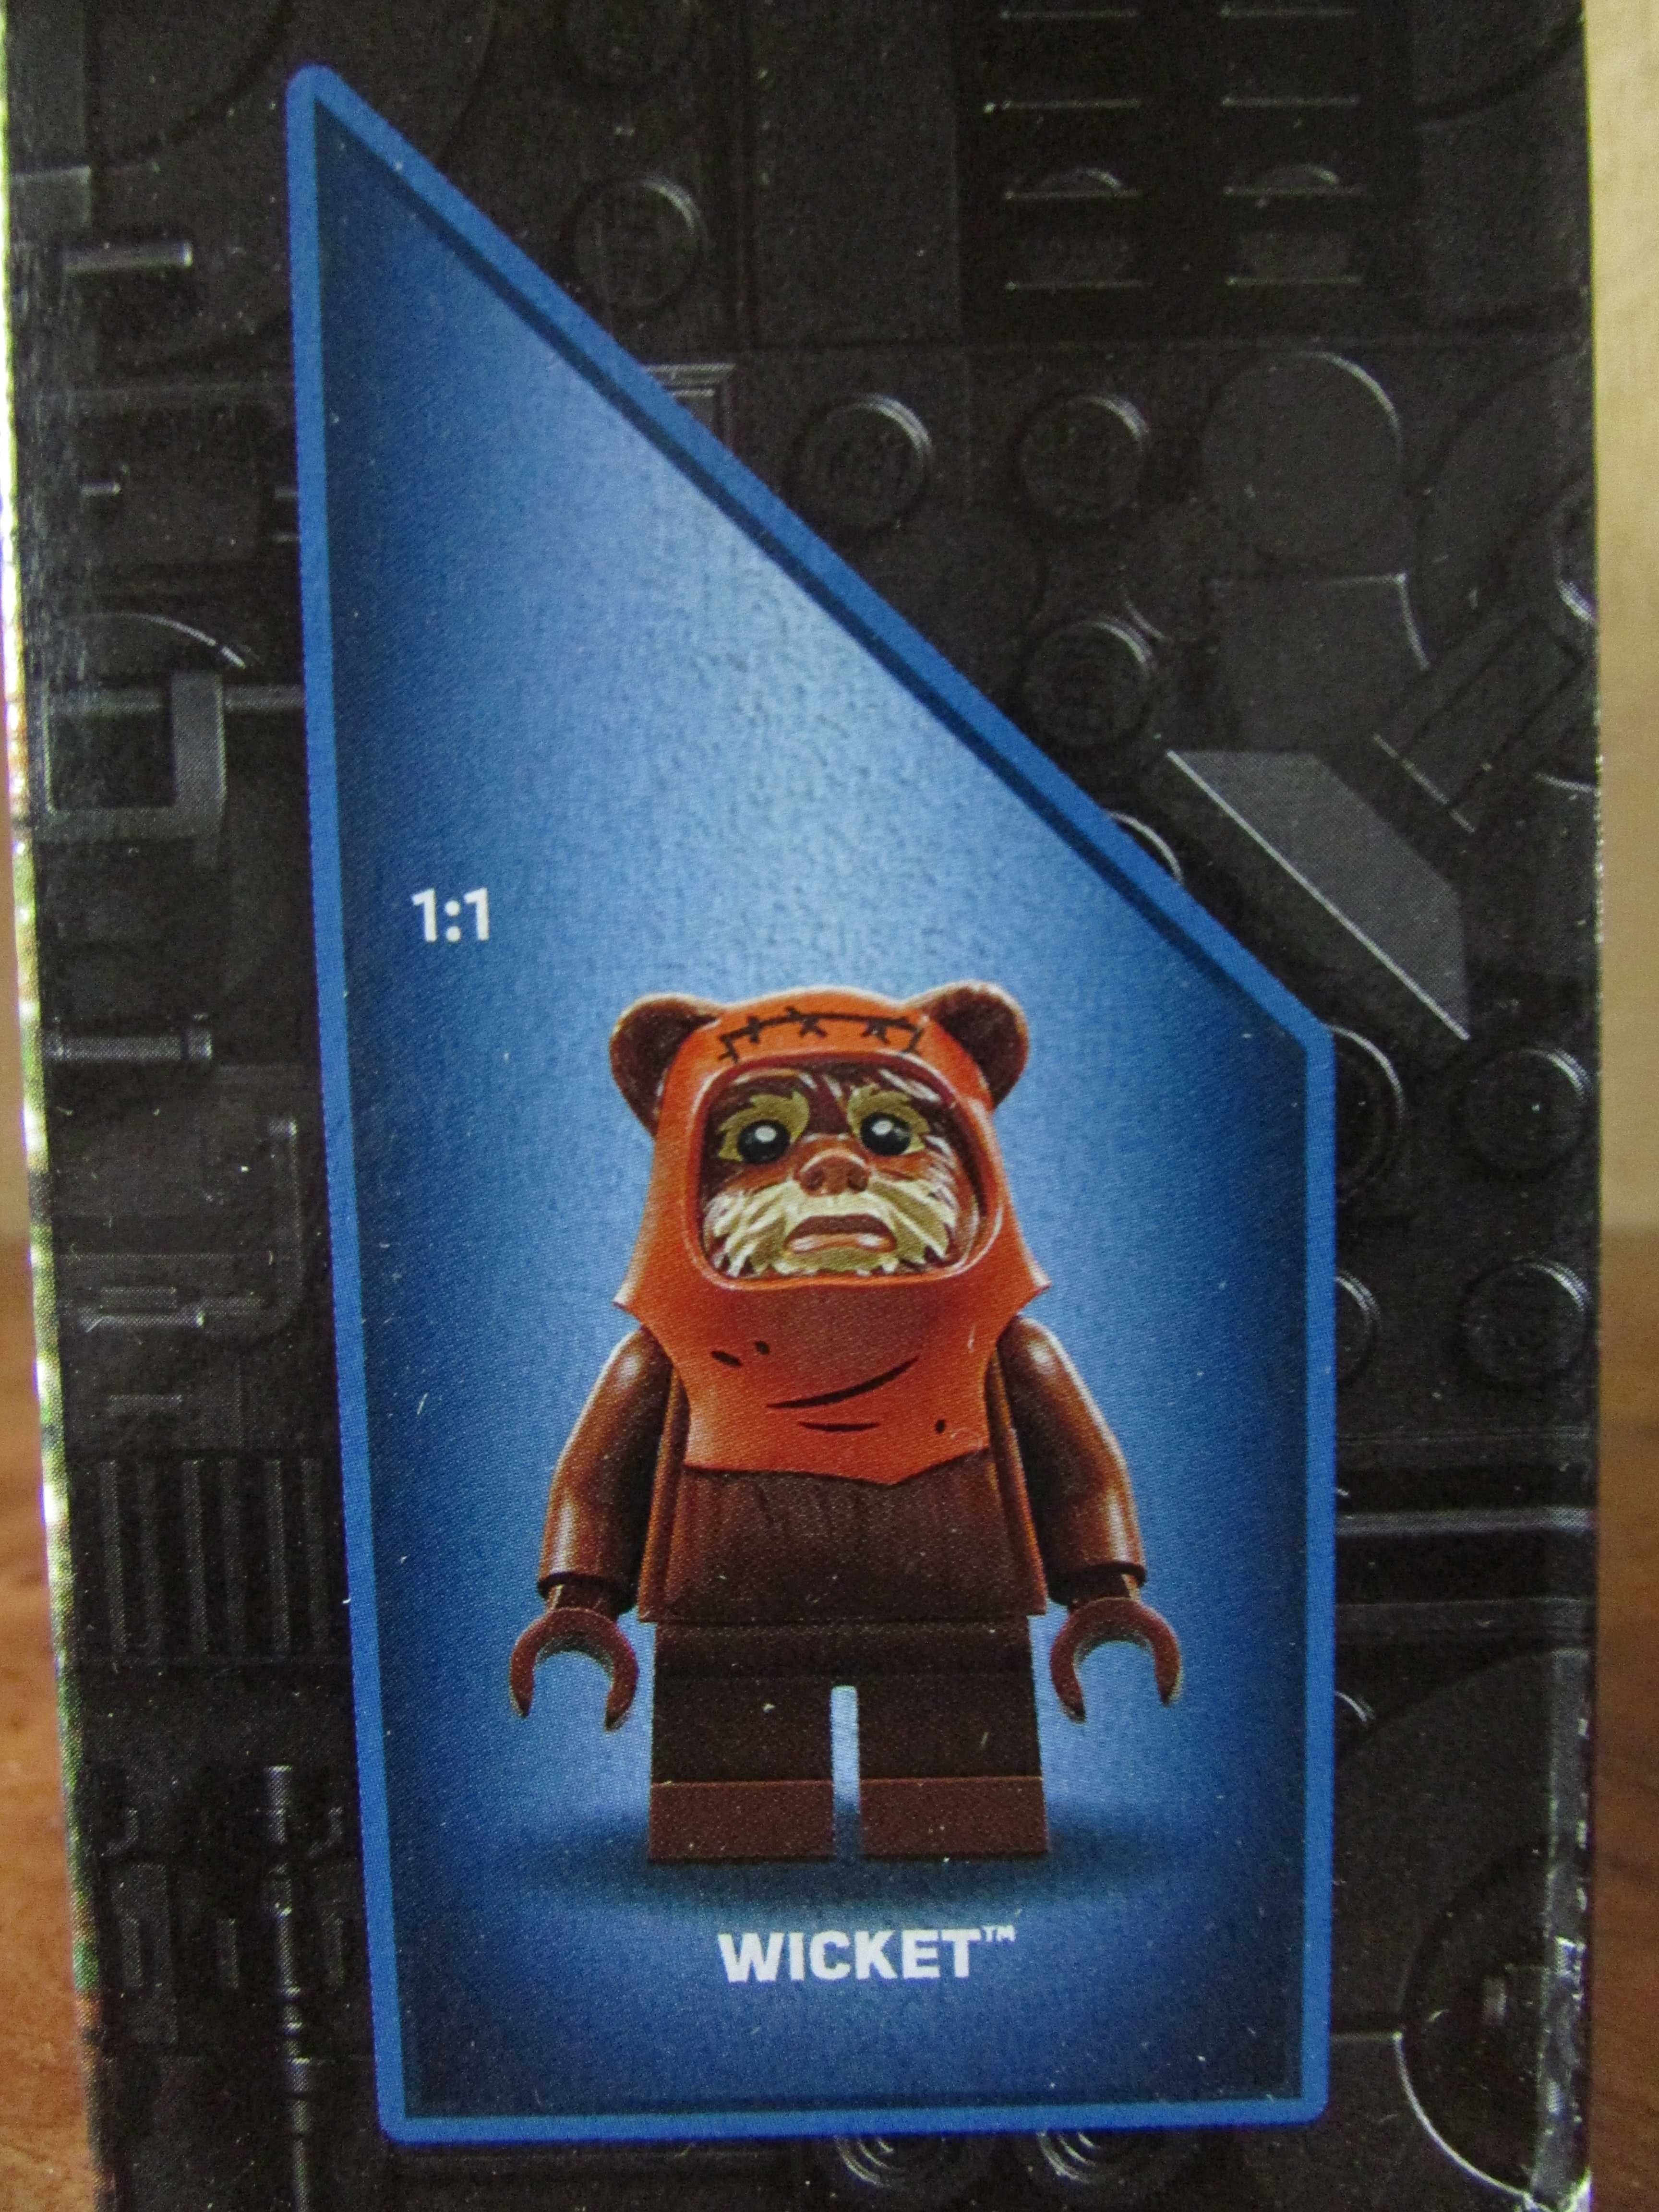 LEGO Star Wars 75332 (2)